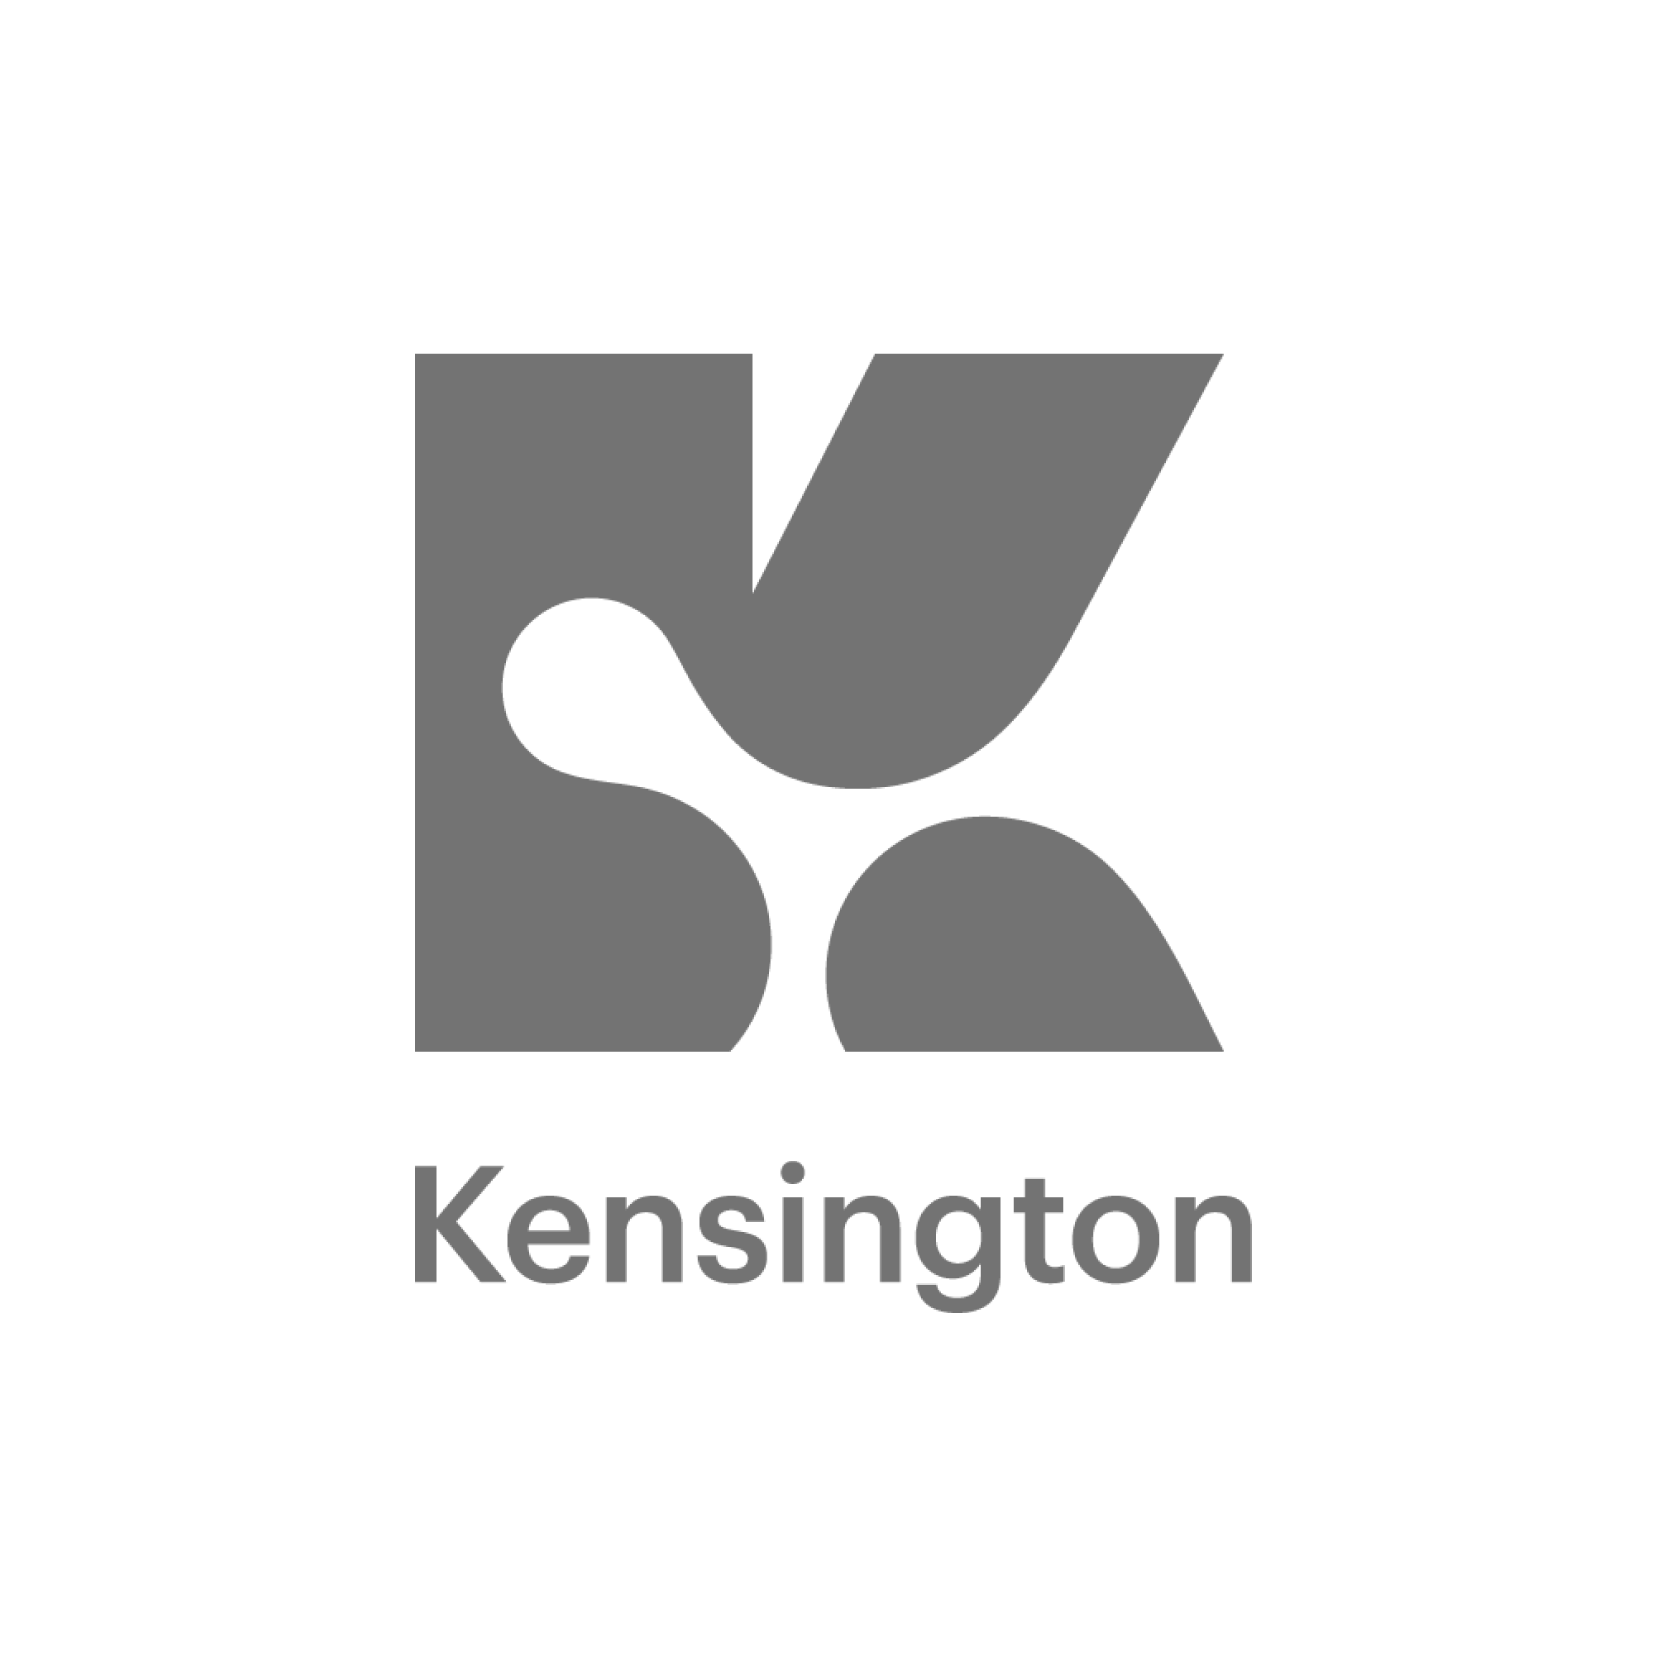 Kensington-01